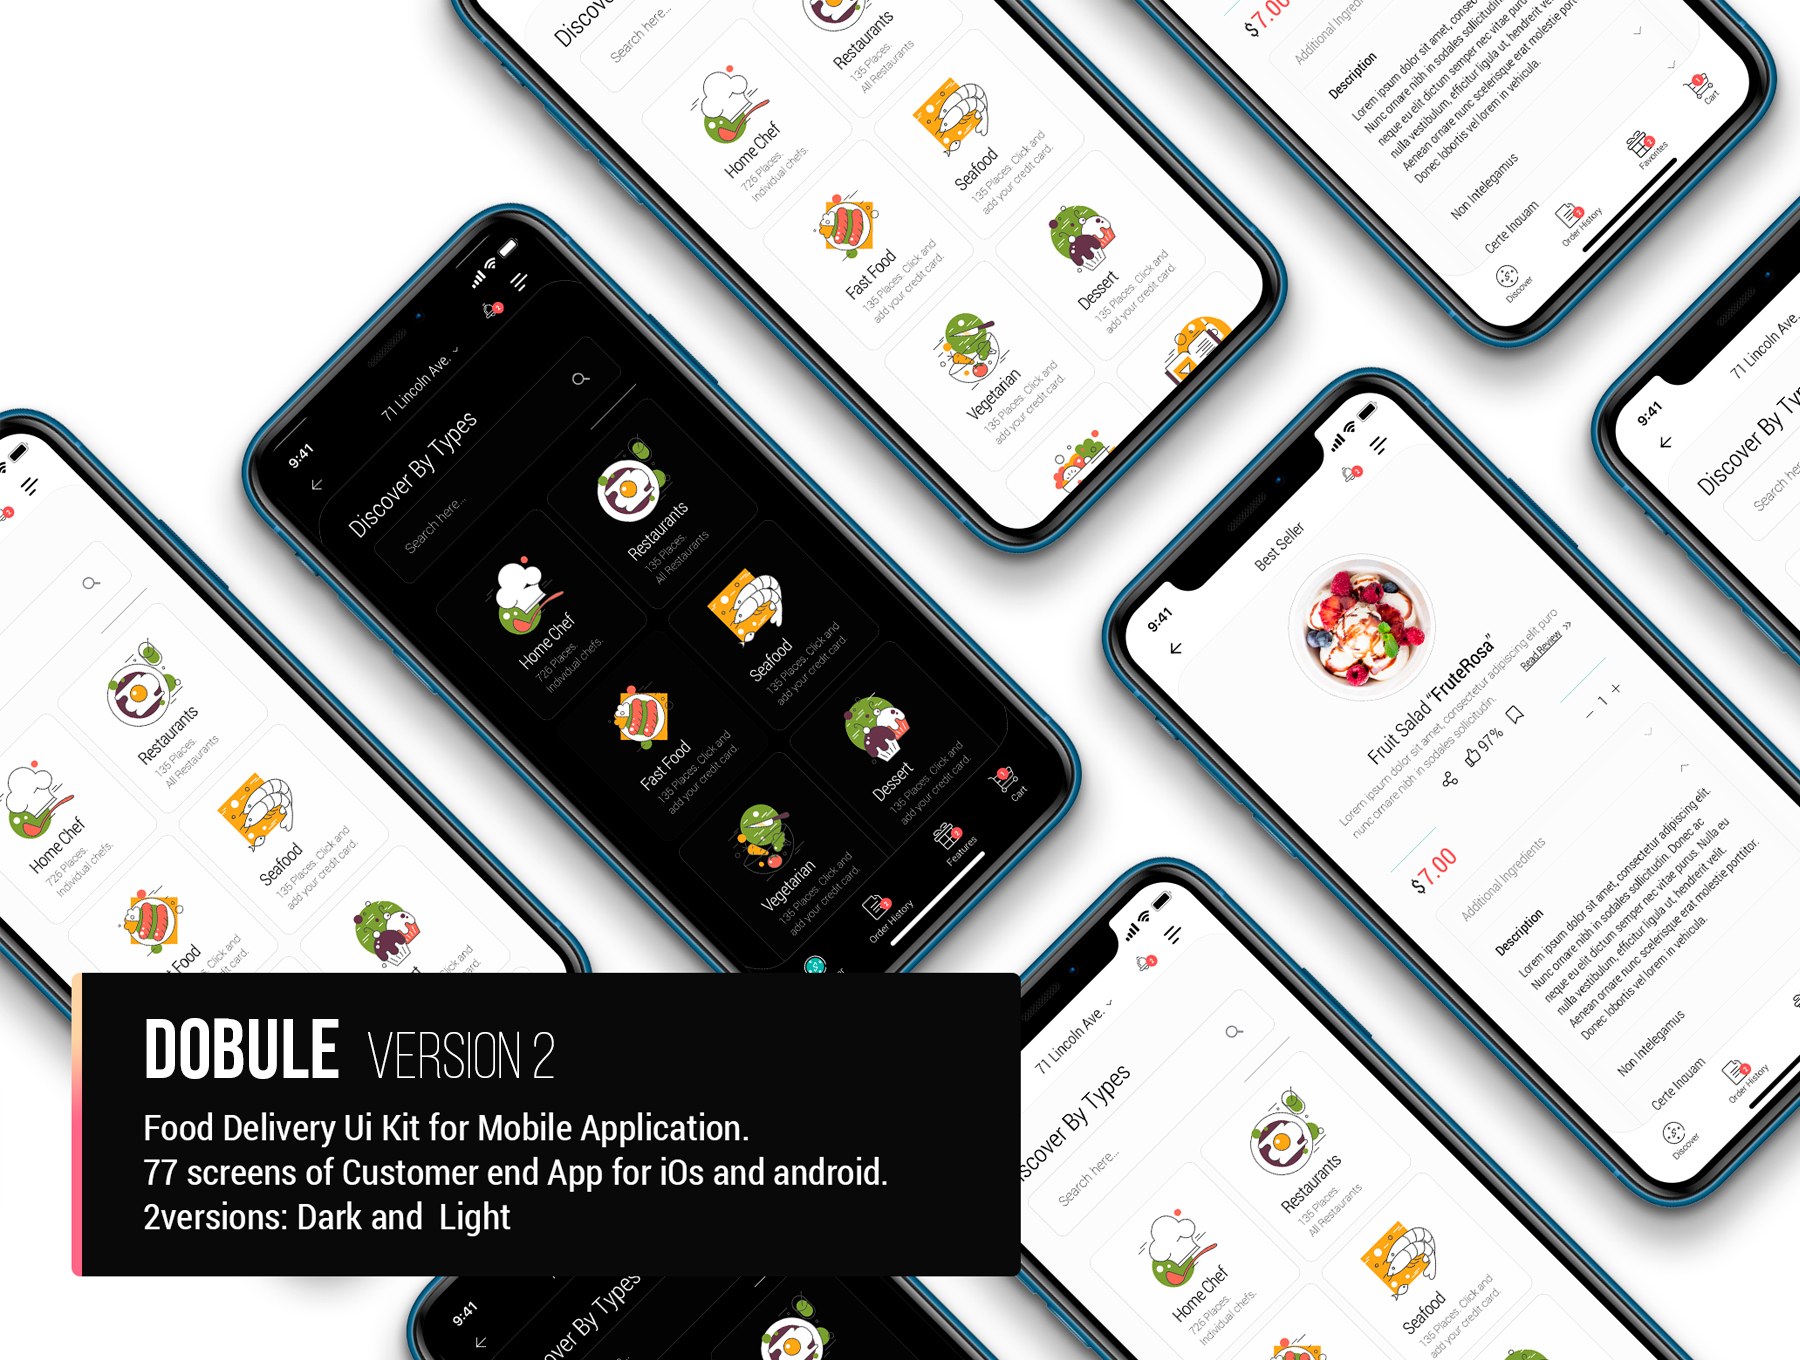 Dobule - Food Delivery UI Kit for Mobile App - 7